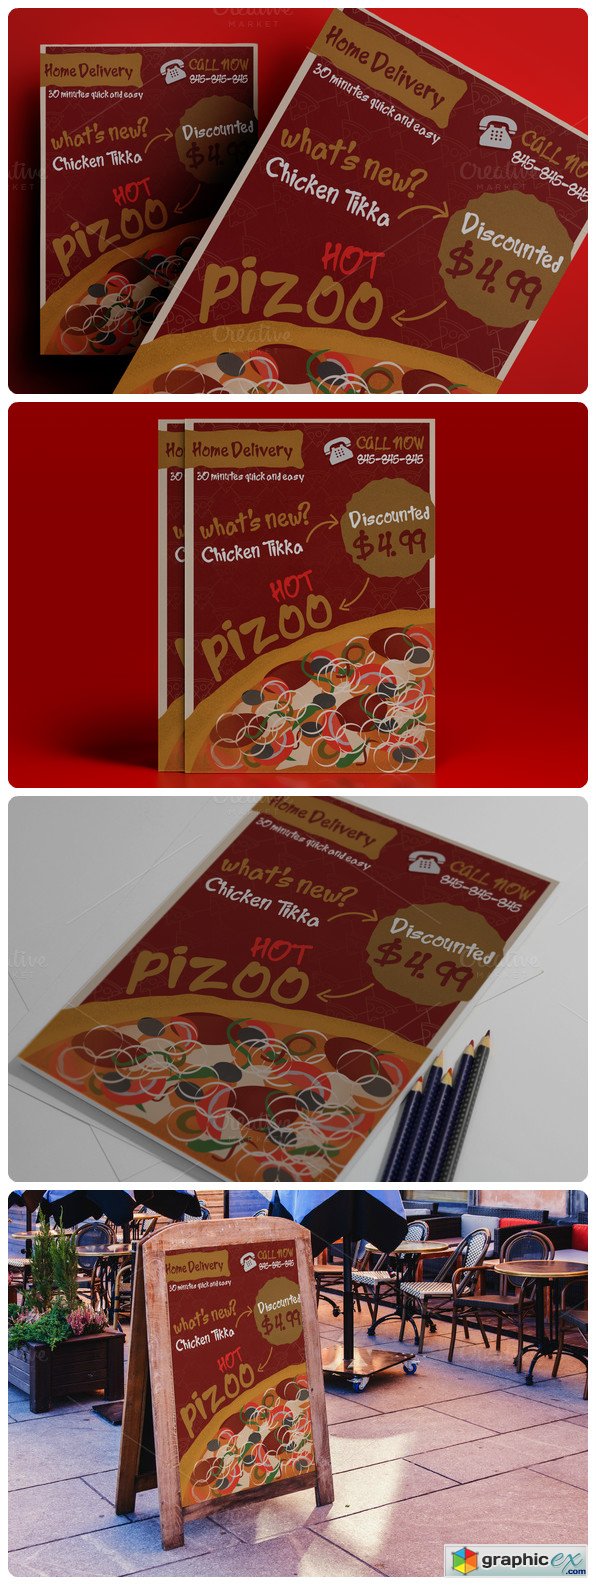 Retro Pizza Flyer for Restaurant